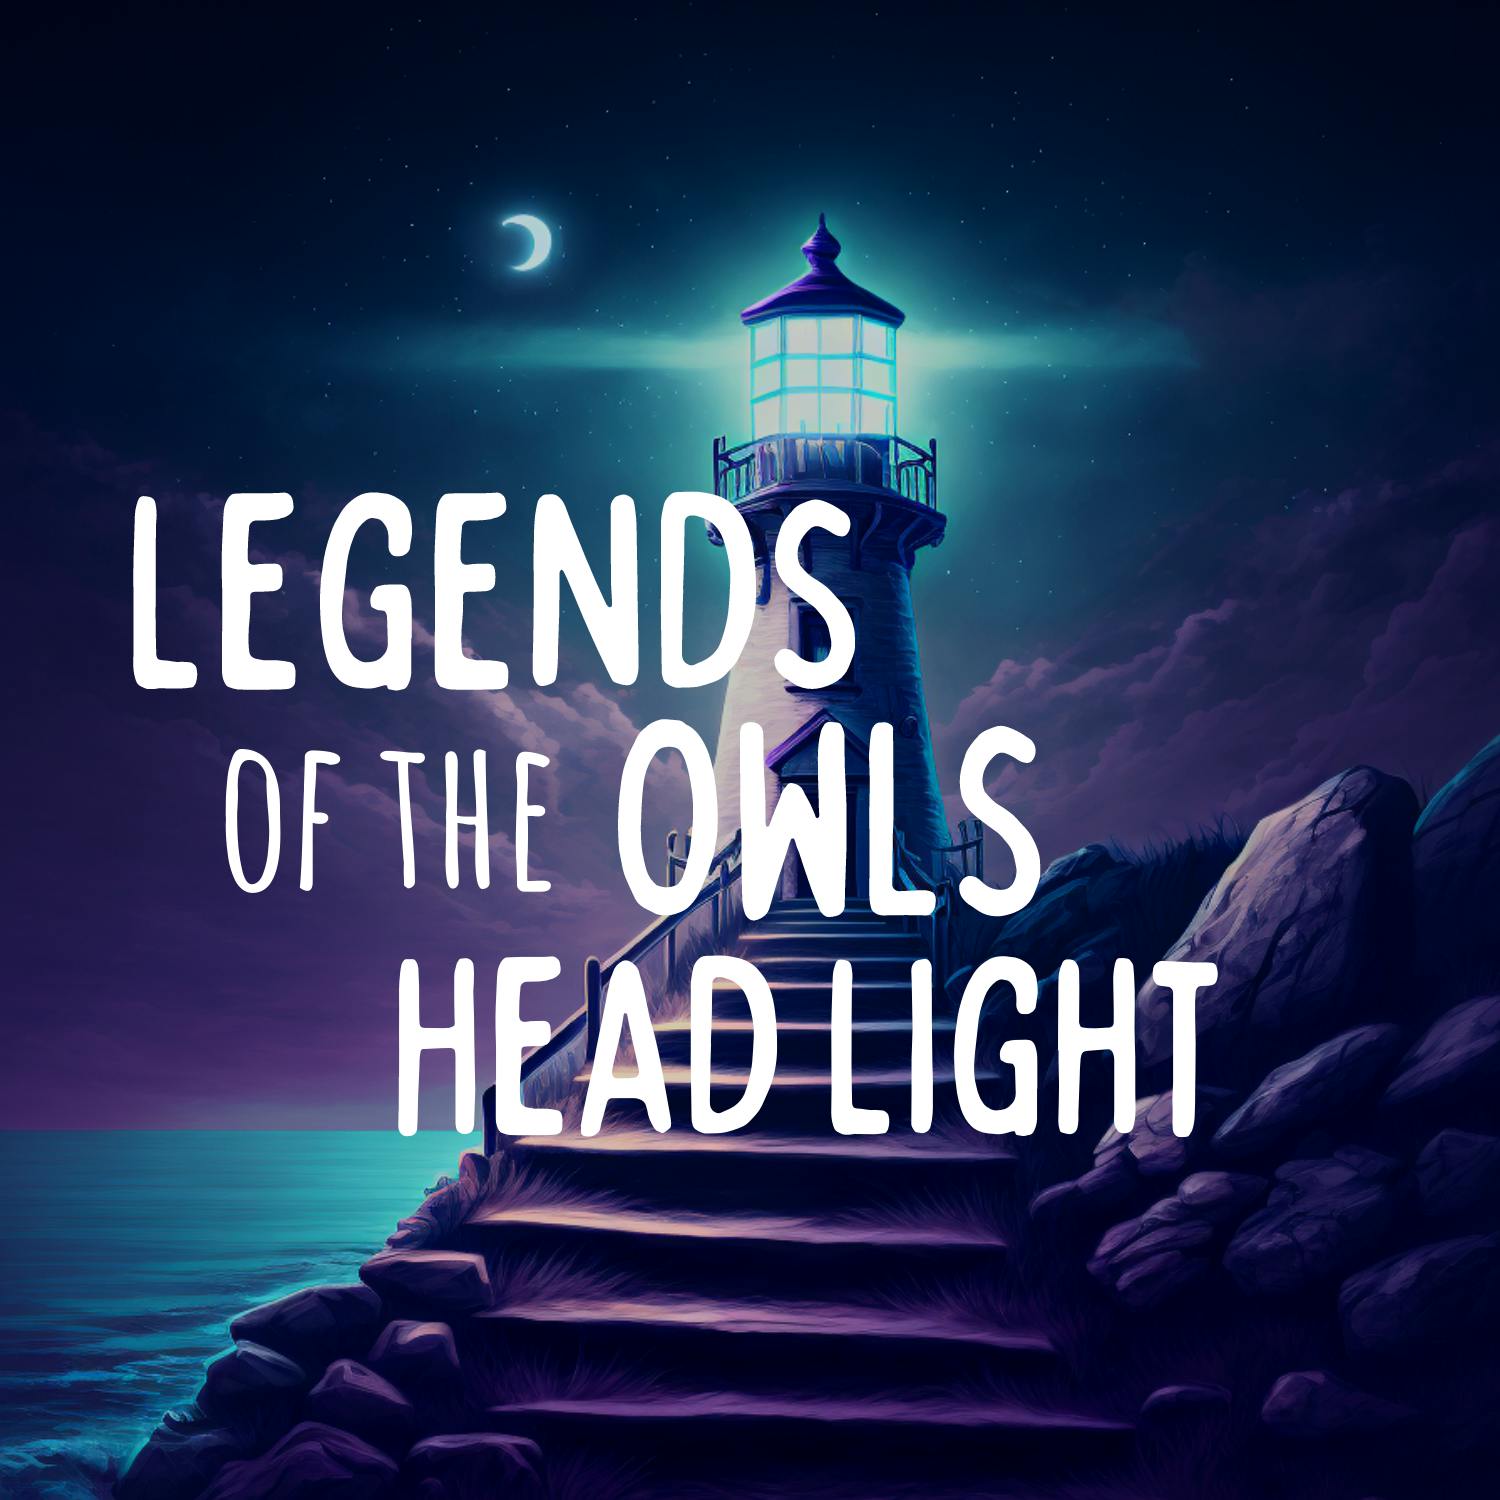 Legends of the Owls Head Light